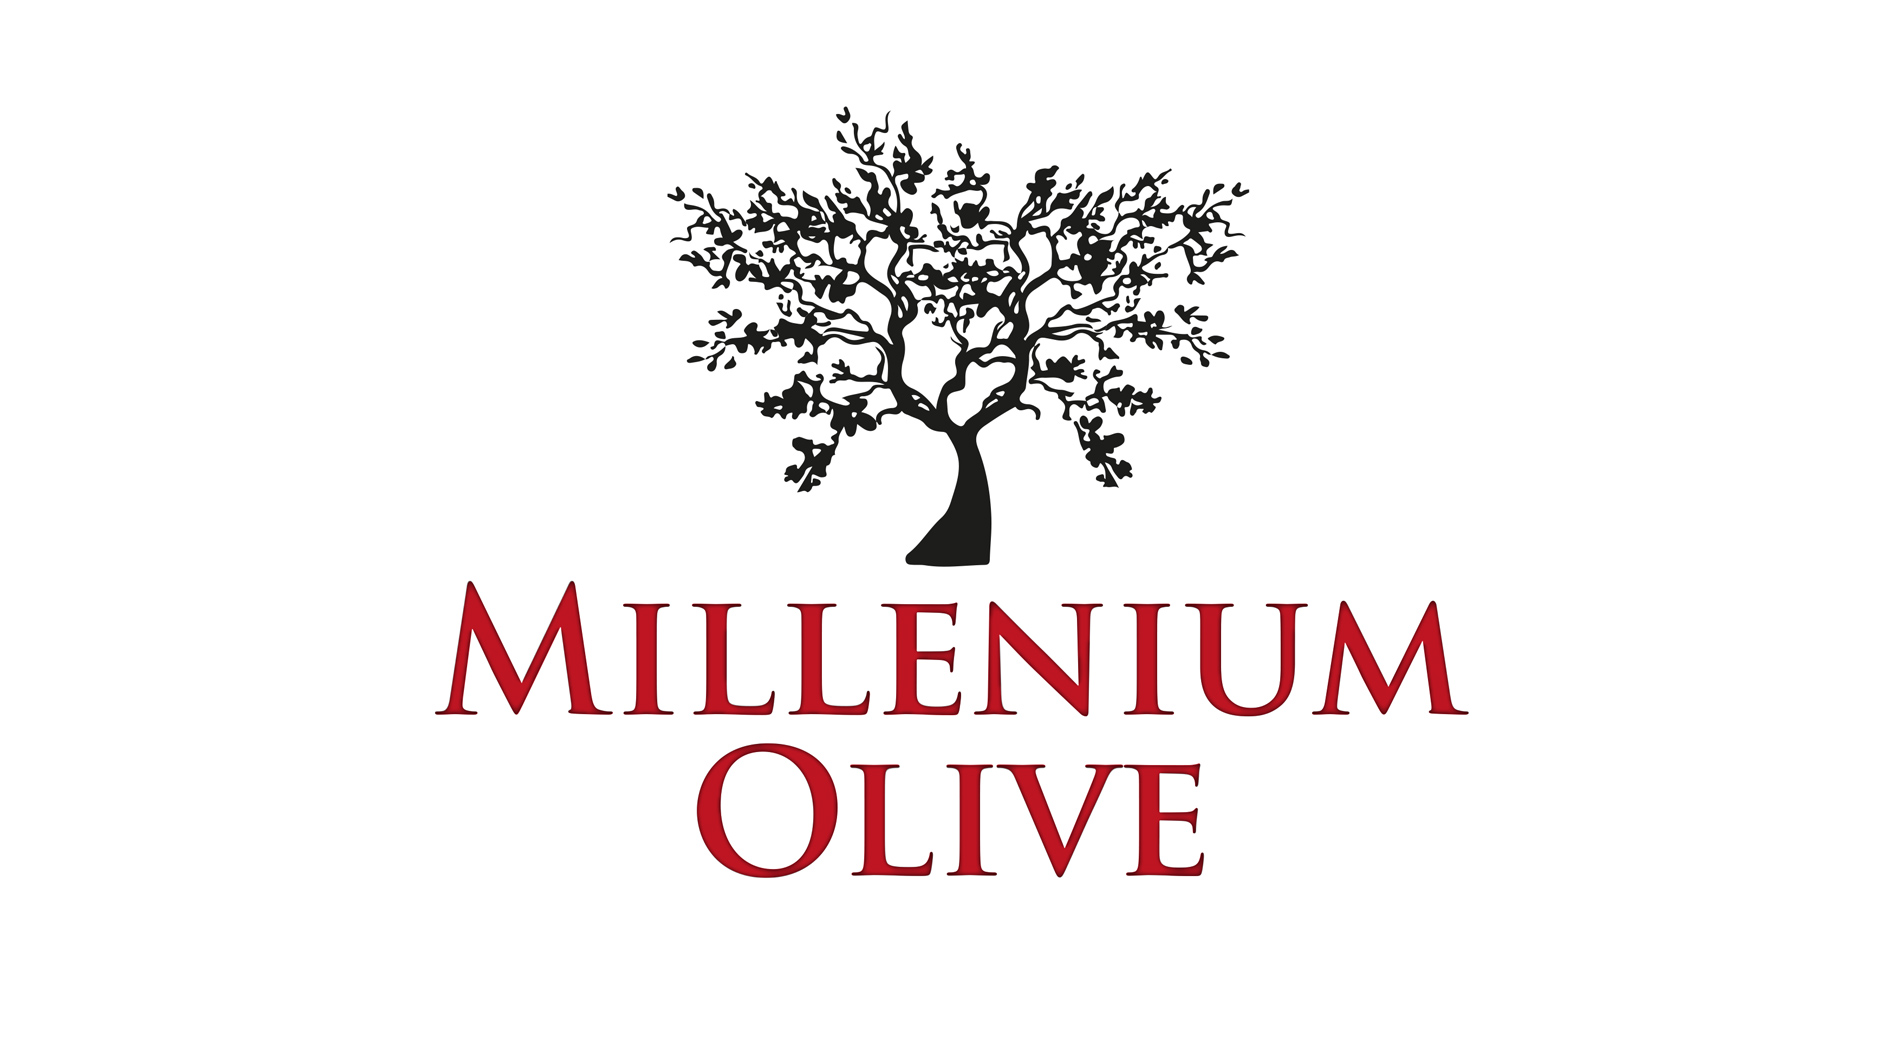 Diseño gráfico de logo y marca para productor y embasador de aceite de oliva virgen extra